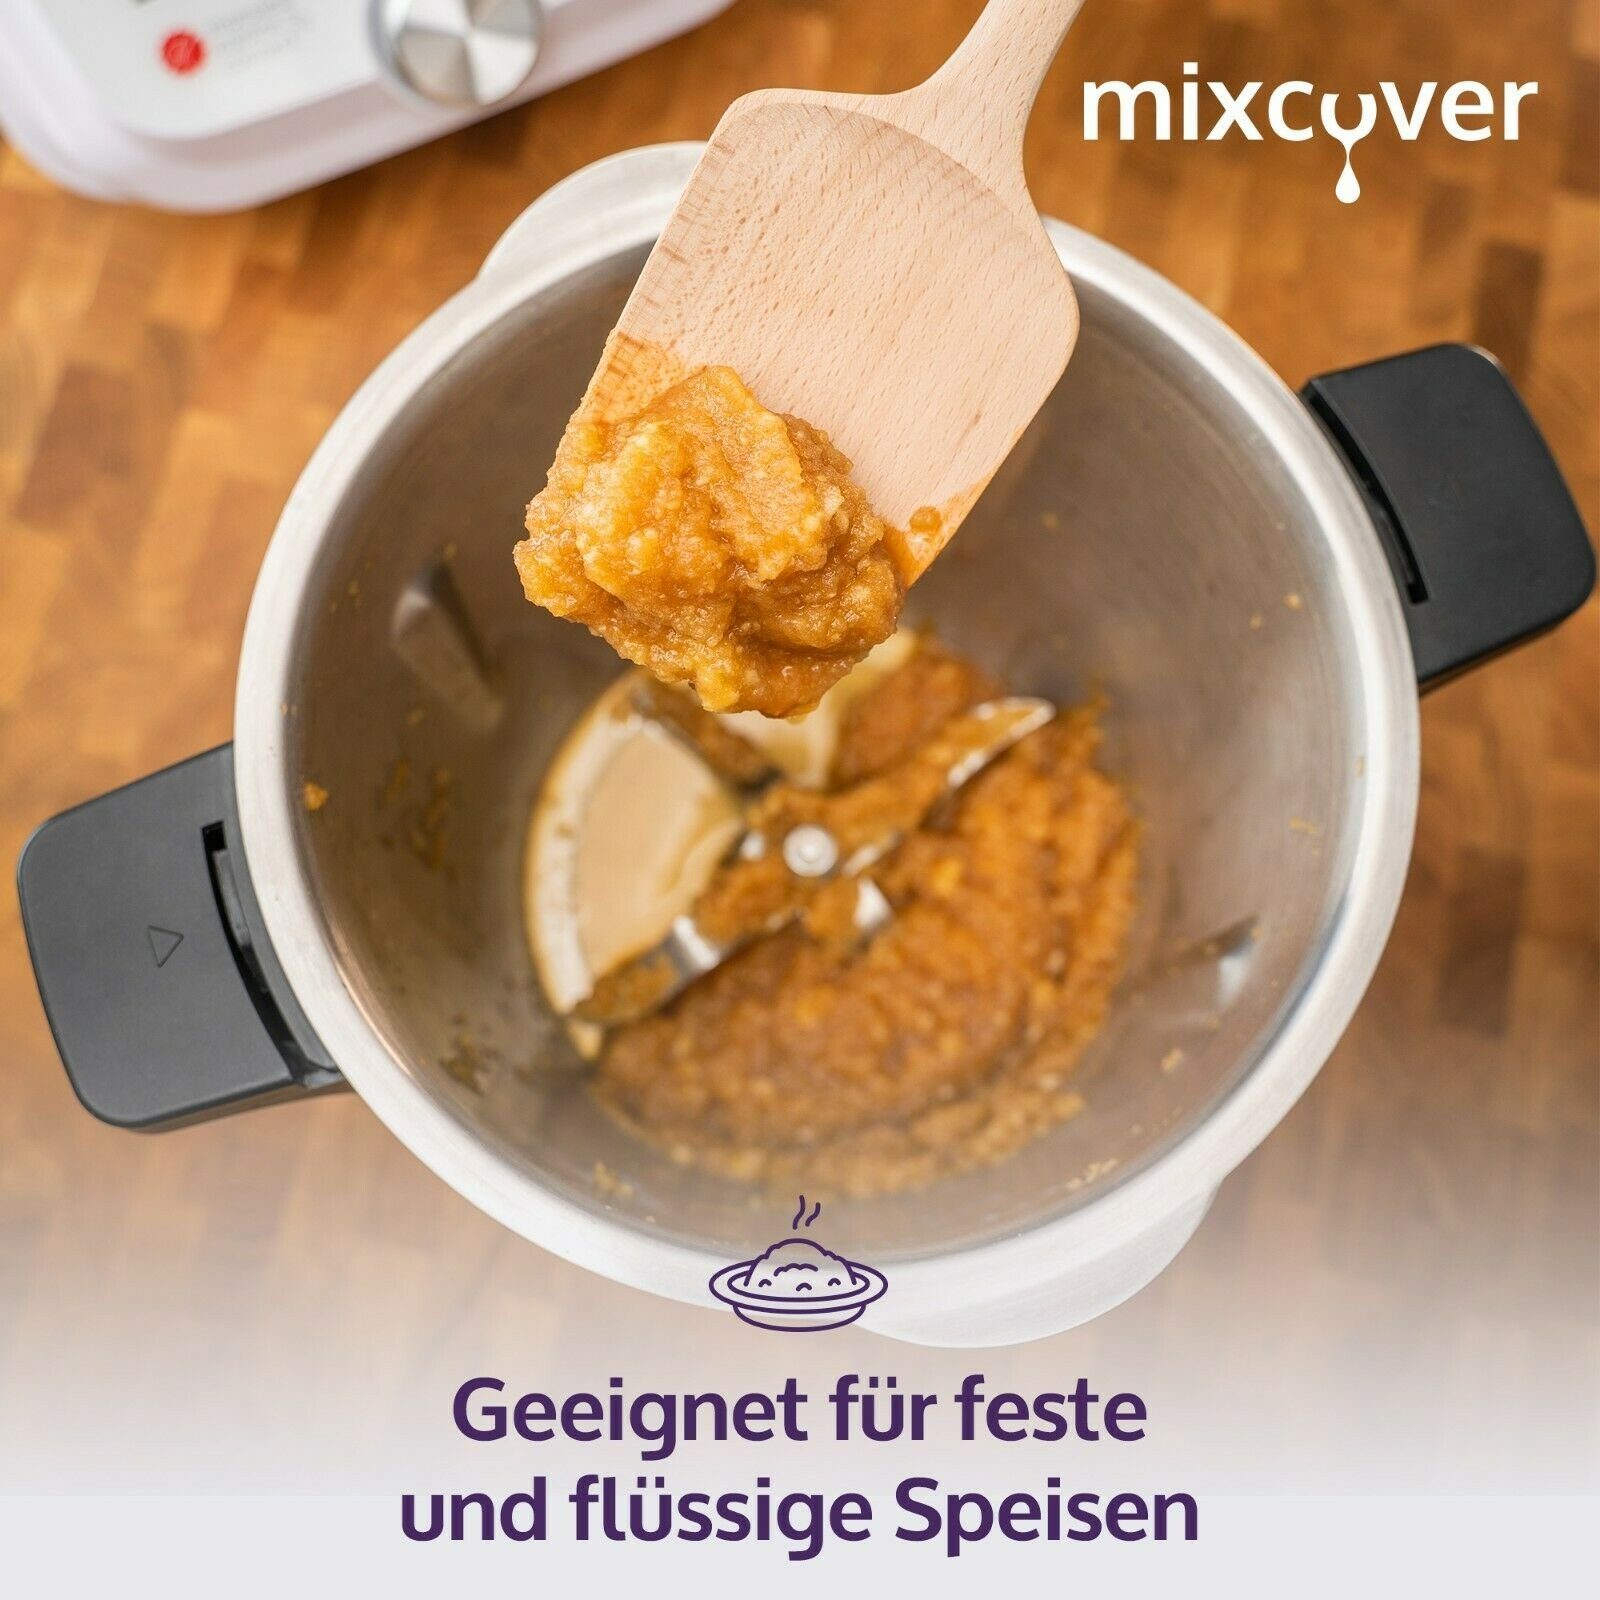 Mixcover Gravur Smart Holzspatel Zubehör Küchenmaschinen-Adapter Nachhaltiger mit & Connect mixcover Monsieur Cuisine